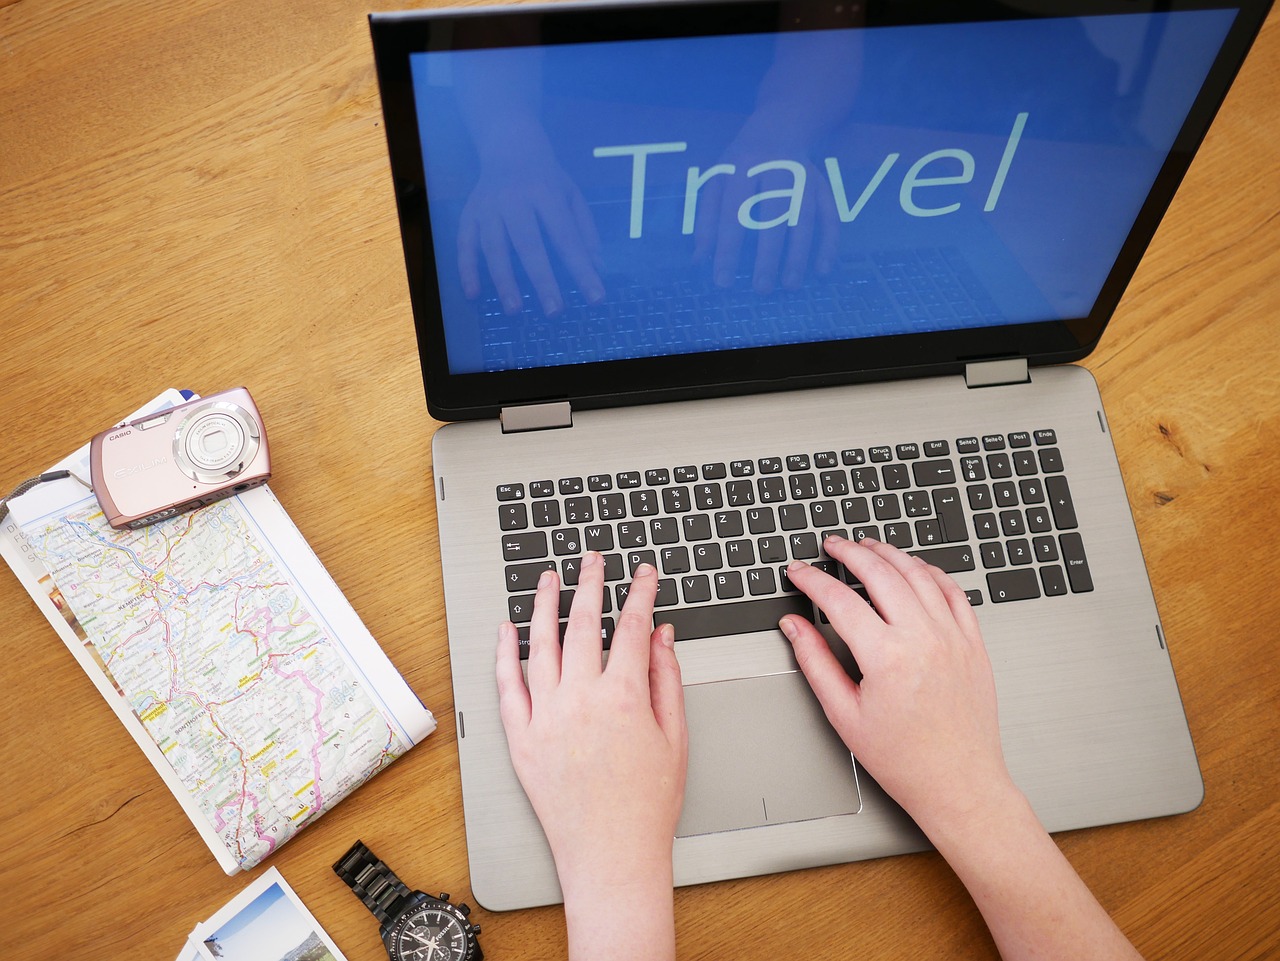 La imagen muestra un ordenador con la palabra travel, un mapa y una cámara de fotos.